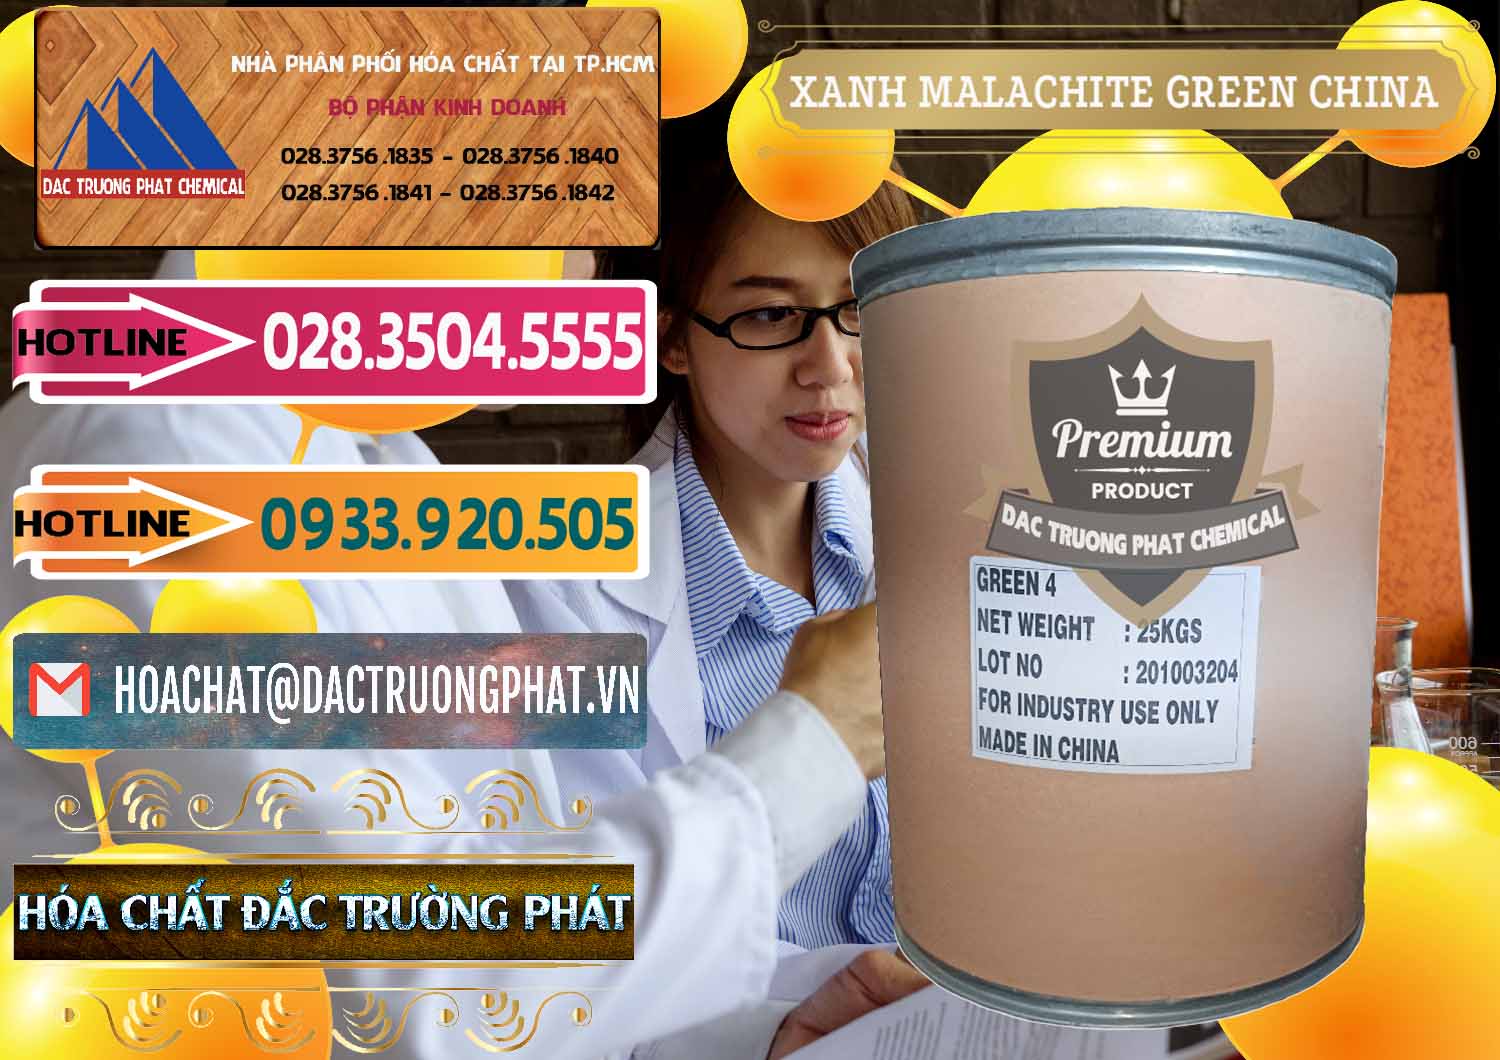 Chuyên phân phối & bán Xanh Malachite Green Trung Quốc China - 0325 - Công ty kinh doanh và cung cấp hóa chất tại TP.HCM - dactruongphat.vn